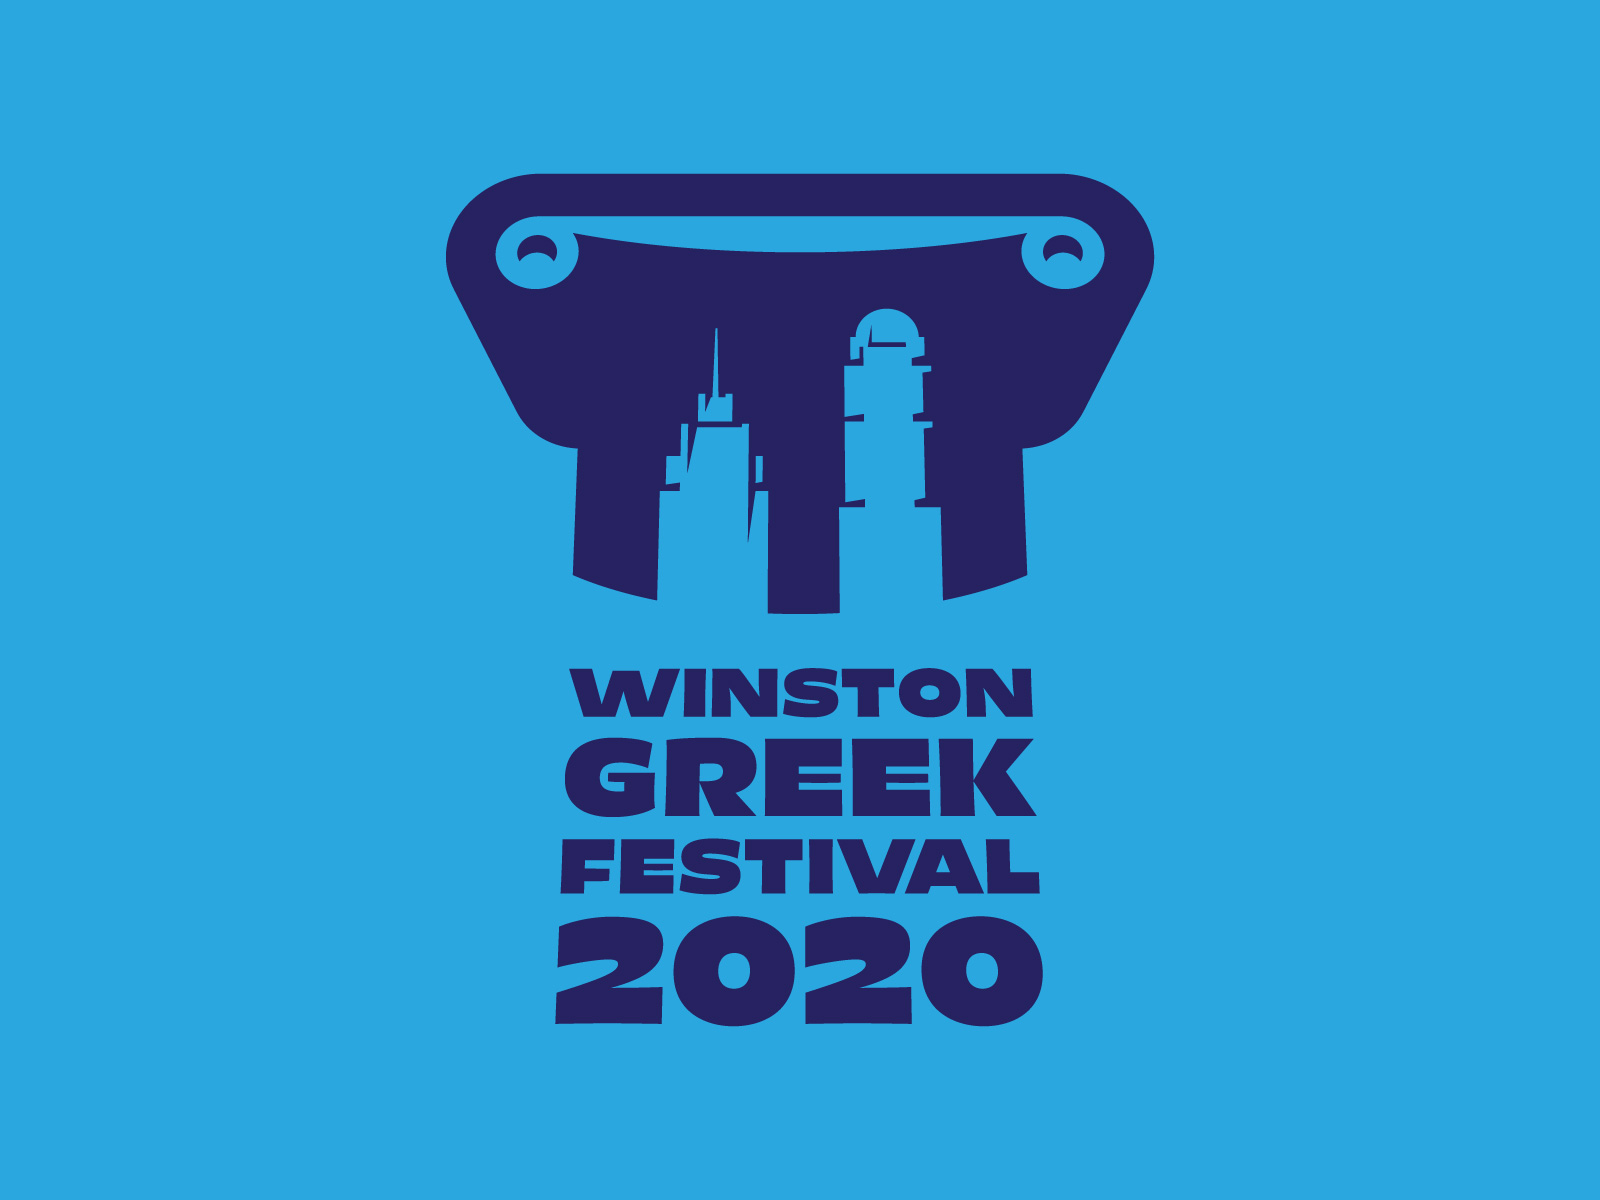 Greek Festival Logo Comp 2 by Dan Draper on Dribbble